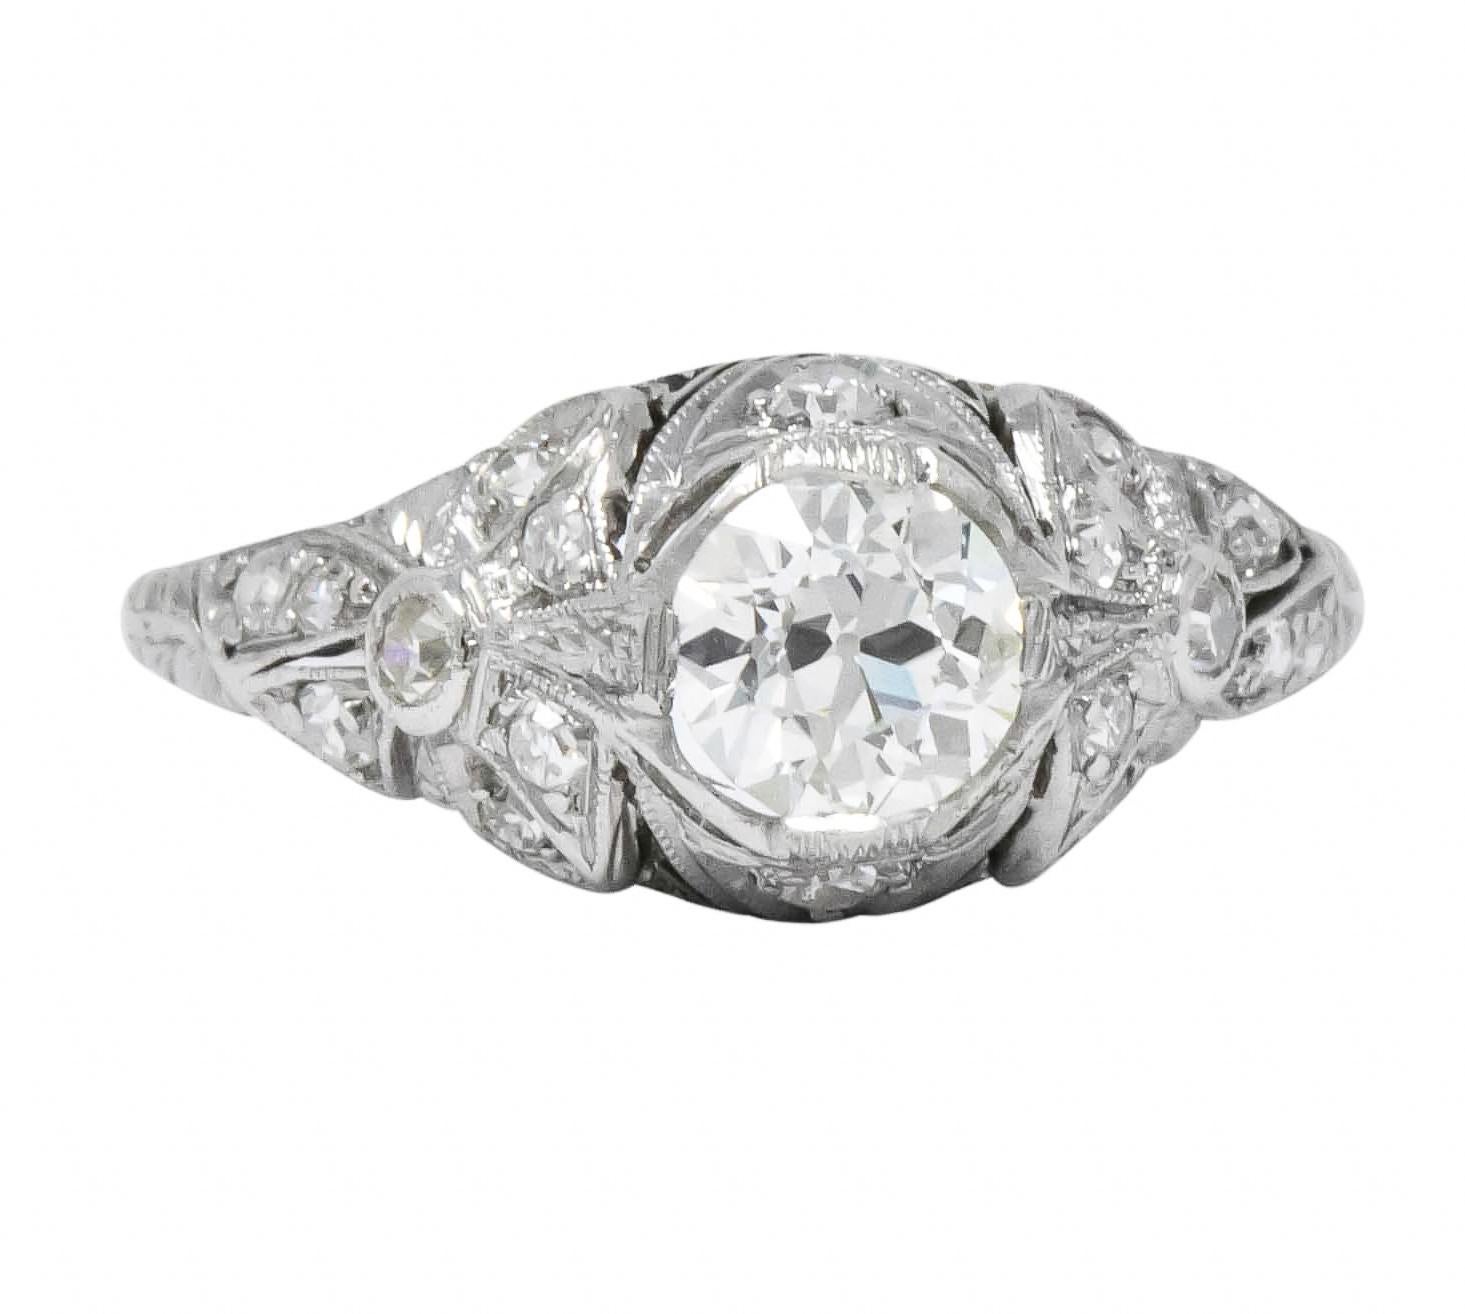 Edwardian 1.07 Carat Old European Cut Diamond Platinum Engagement Ring GIA